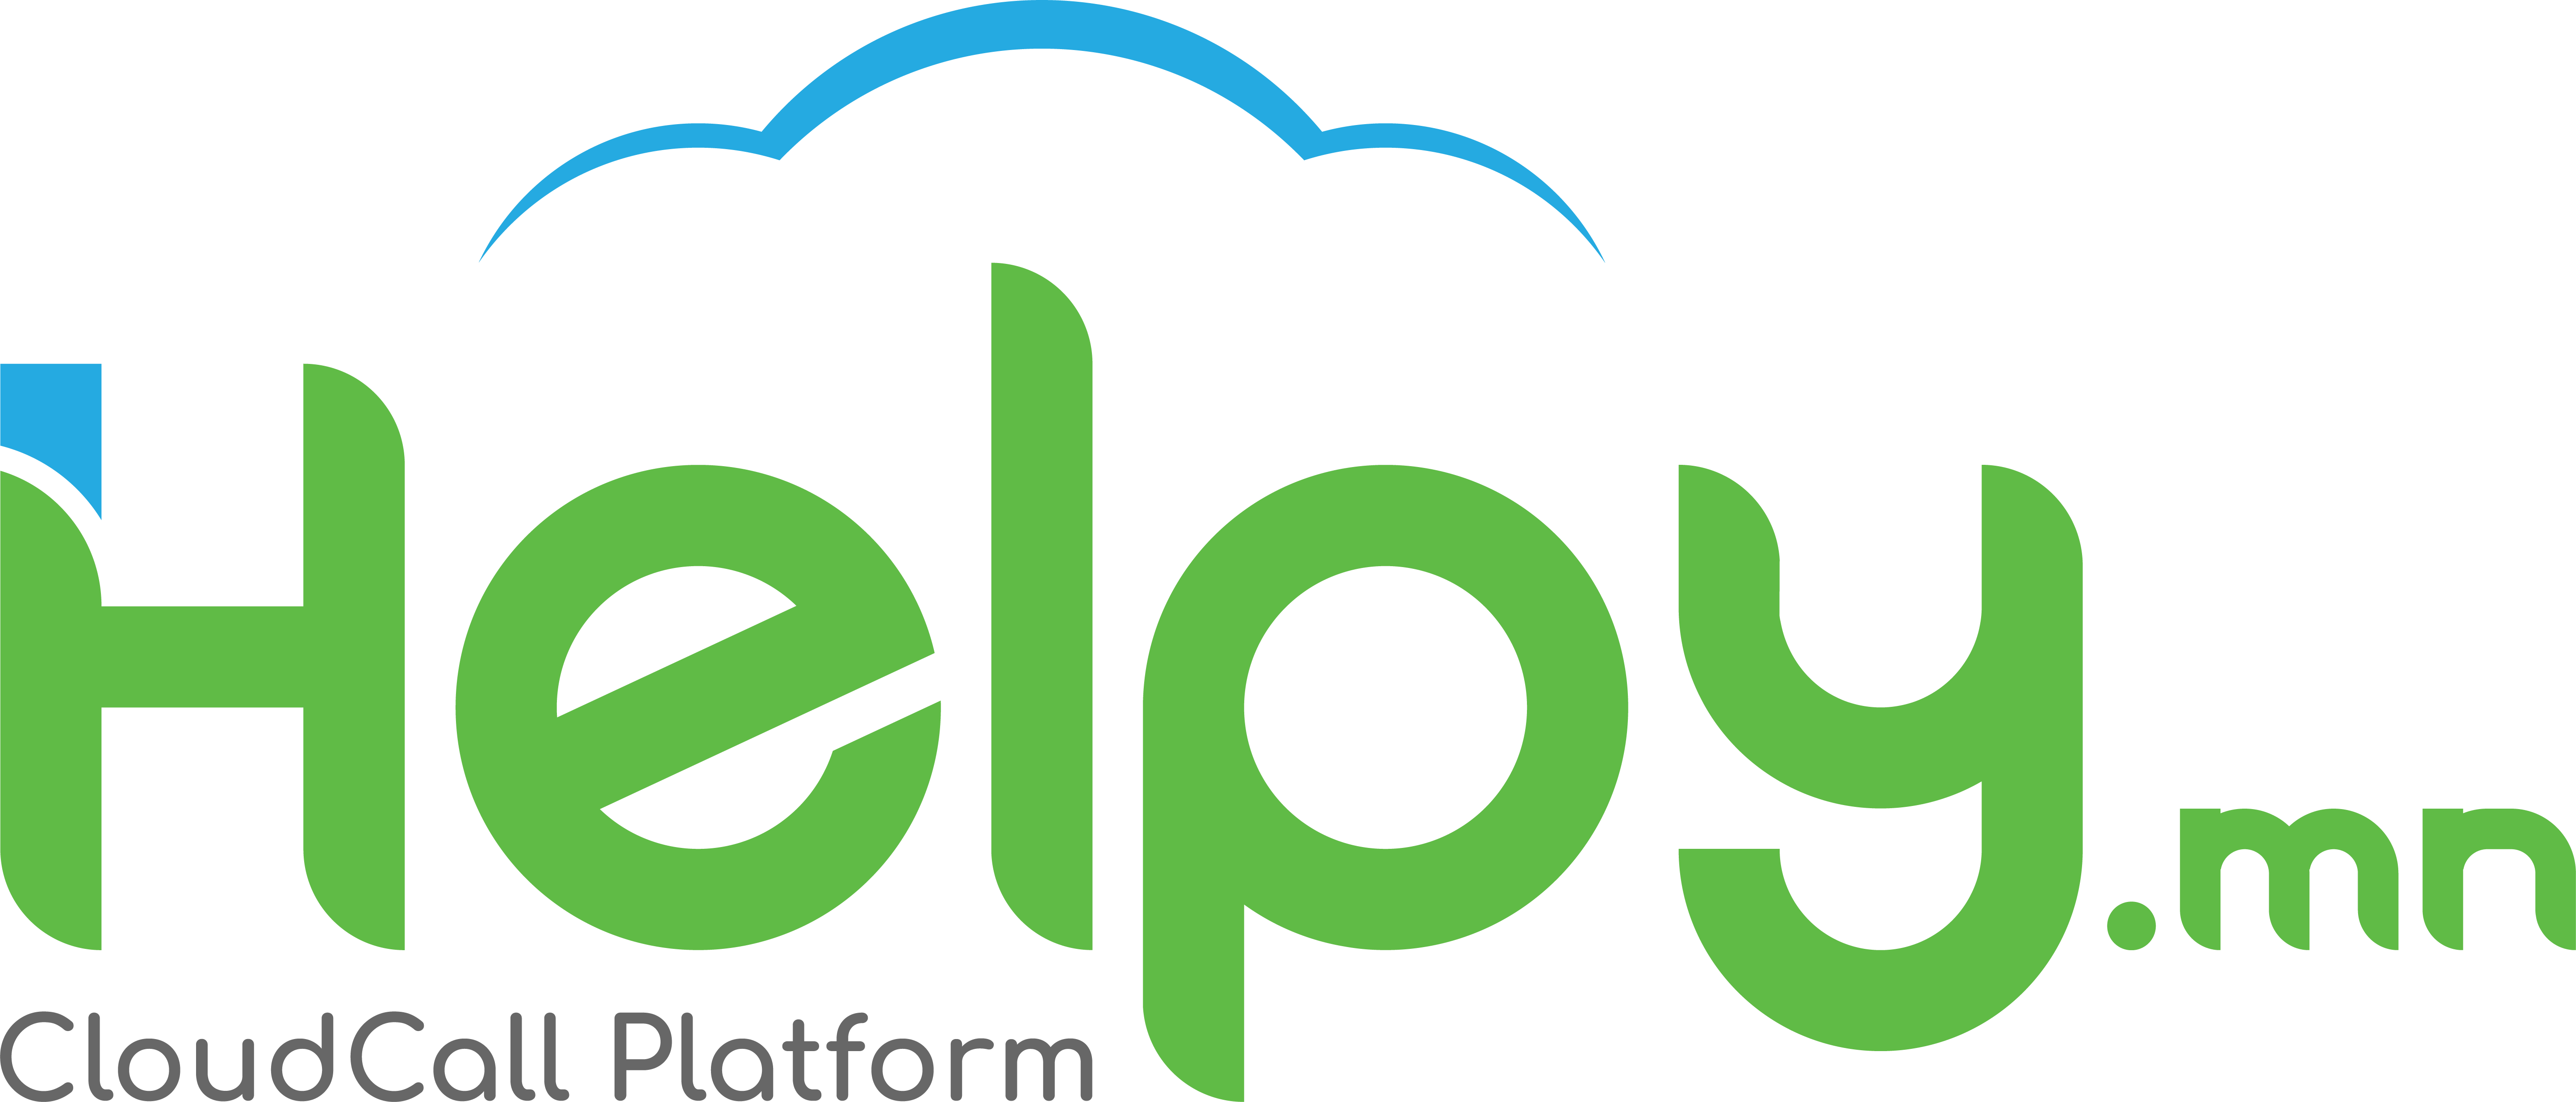 Helpy Logo